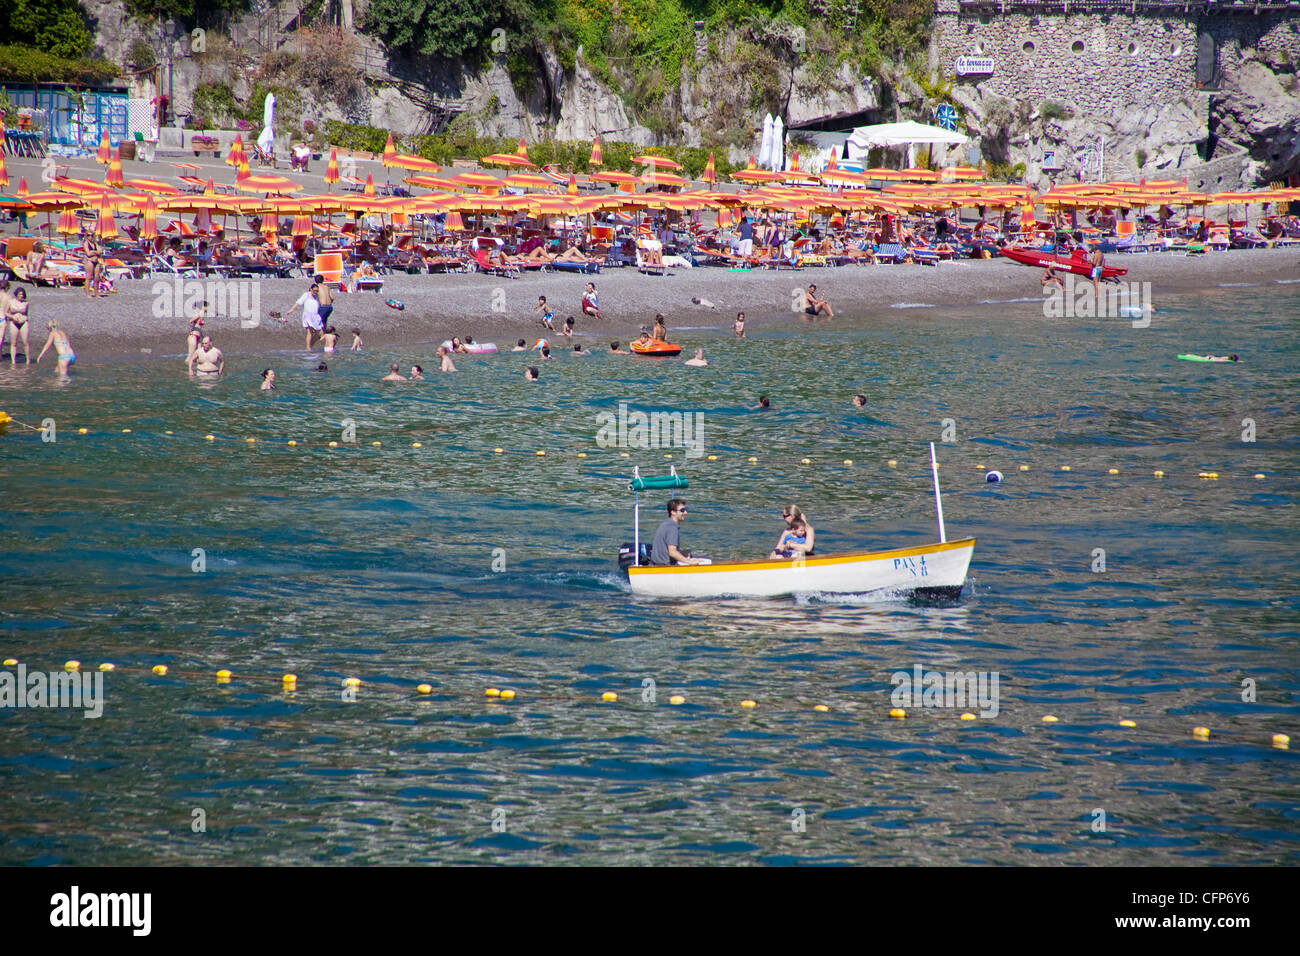 Strand und Dorf, Positano an der Amalfiküste, Weltkulturerbe der UNESCO, Kampanien, Italien, Mittelmeer, Europa Stockfoto